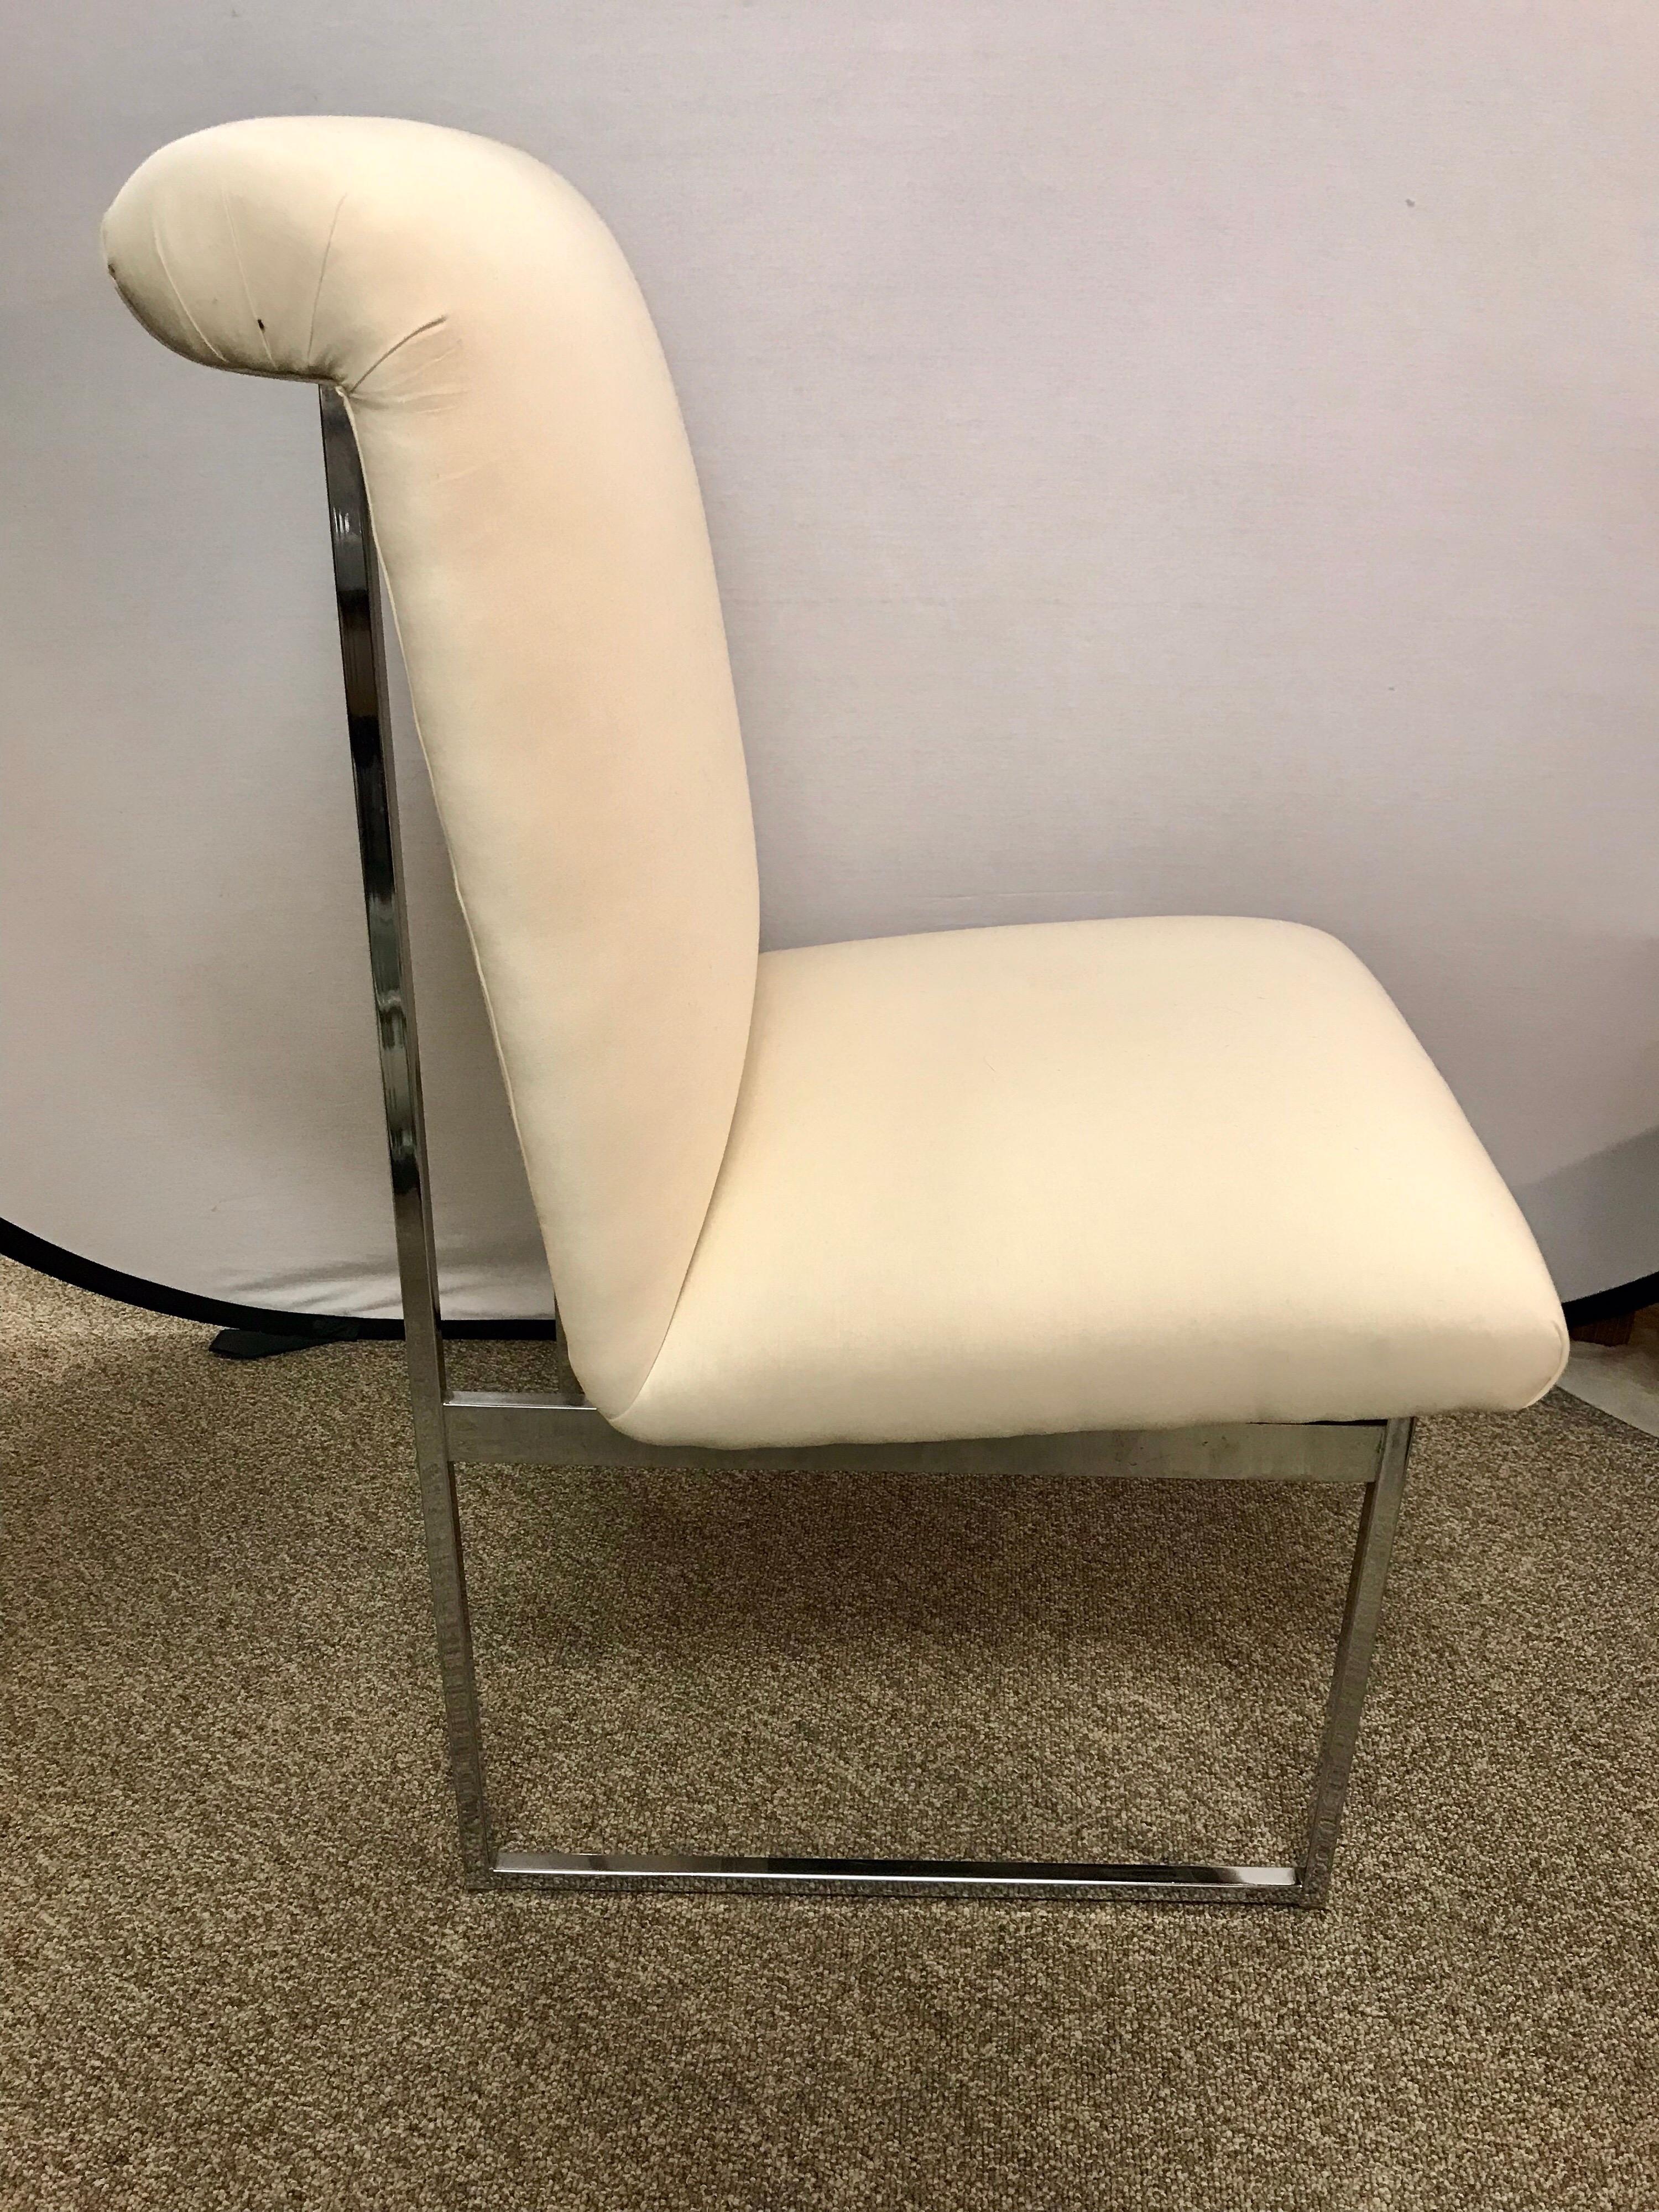 Late 20th Century Mid-Century Modern Milo Baughman Style Heavy Chrome Chair